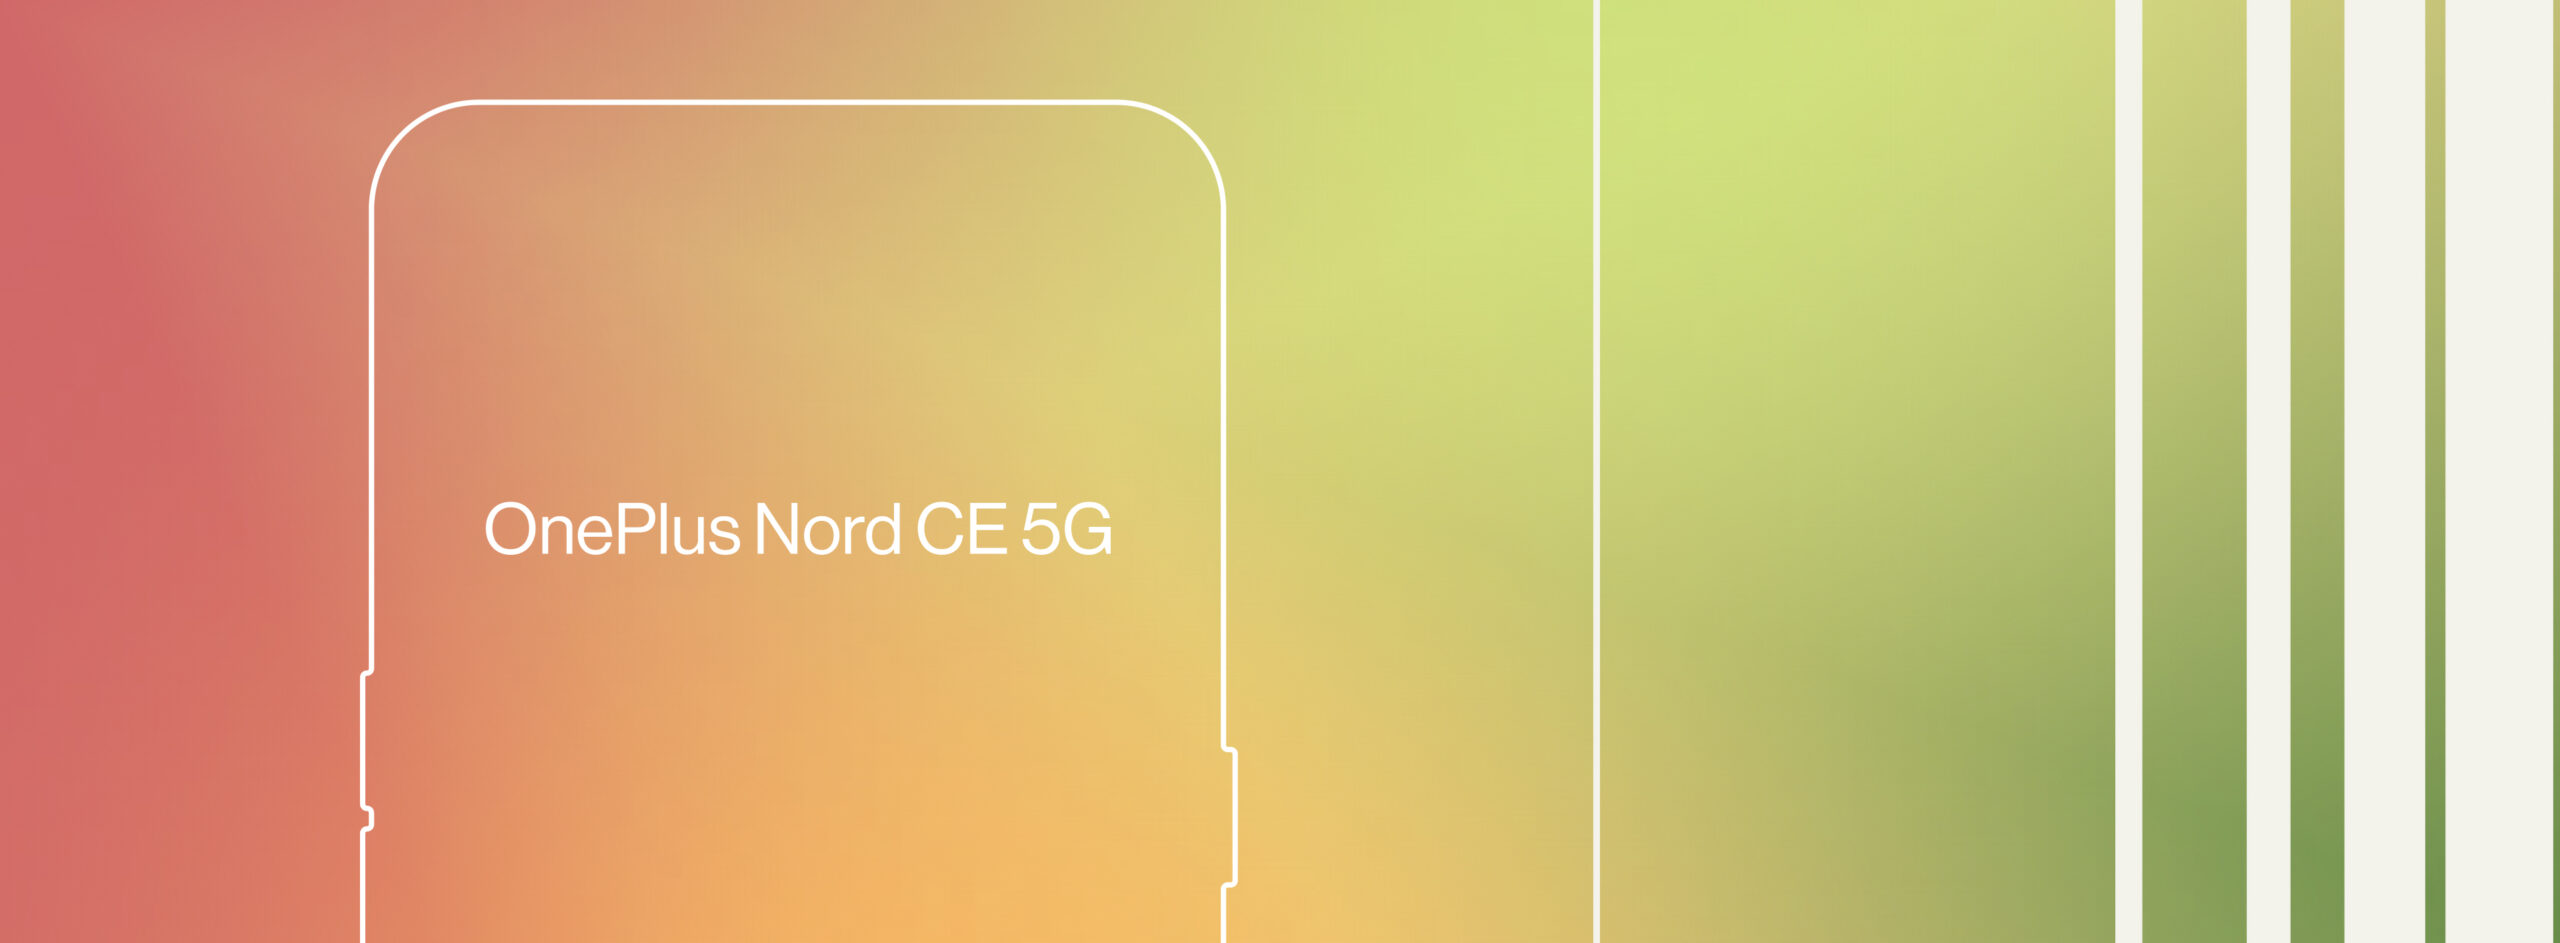 La comunidad de OnePlus tendrá acceso previo al OnePlus Nord CE 5G a través de las ventas anticipadas Core Sales